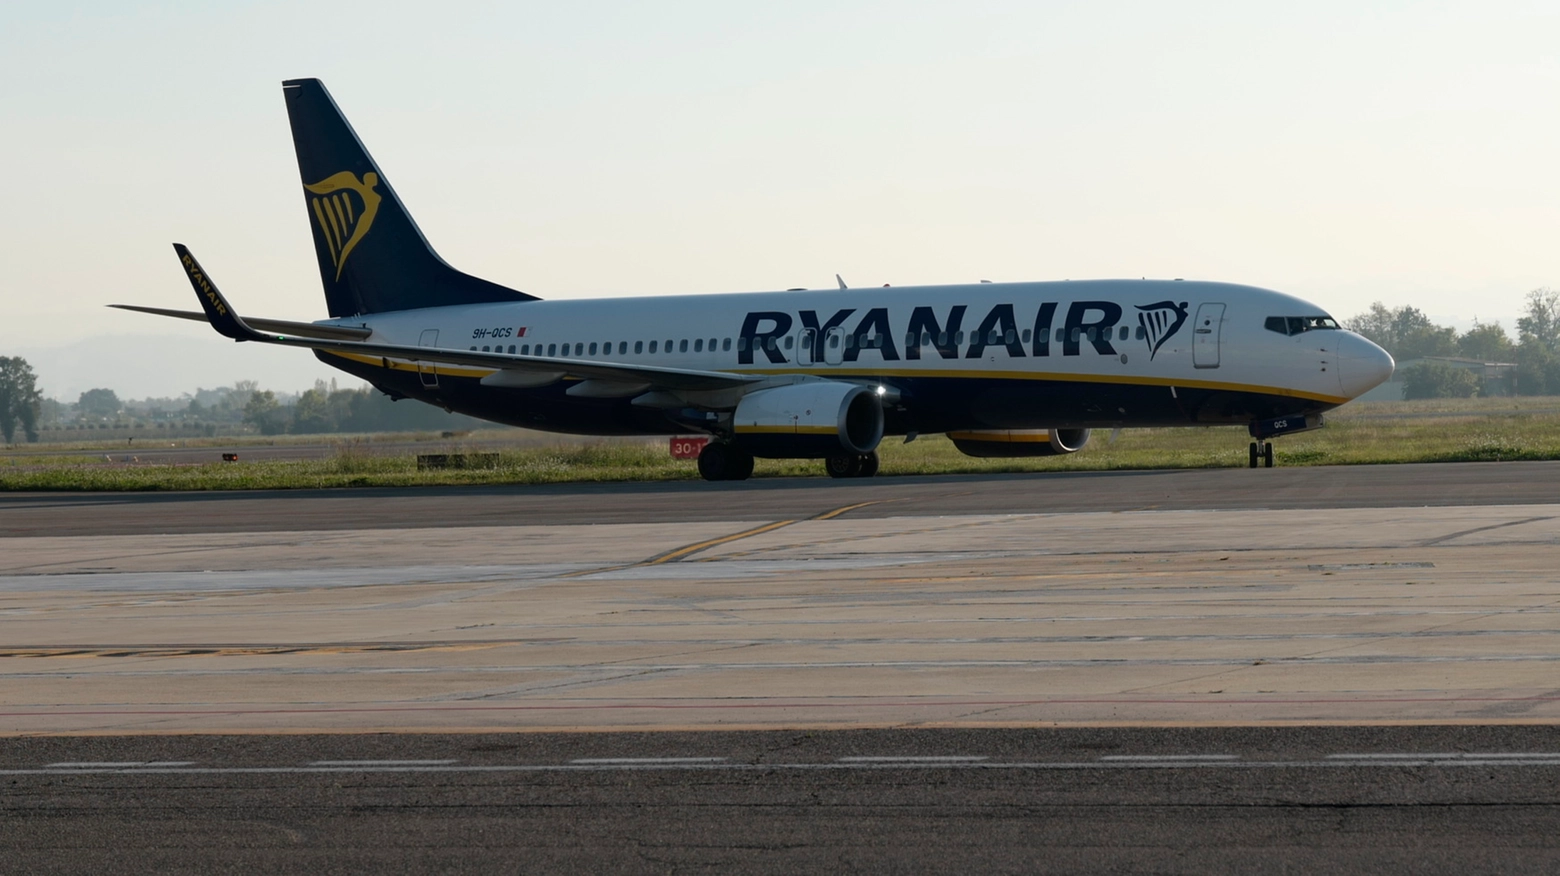 Il pilota dell’aereo Ryanair ha invertito la rotta, tornando allo scalo di Caselle, da dove era decollato. Inutili i tentativi di rianimazione in pista. Sotto choc la moglie del giovane, trasportata in ospedale